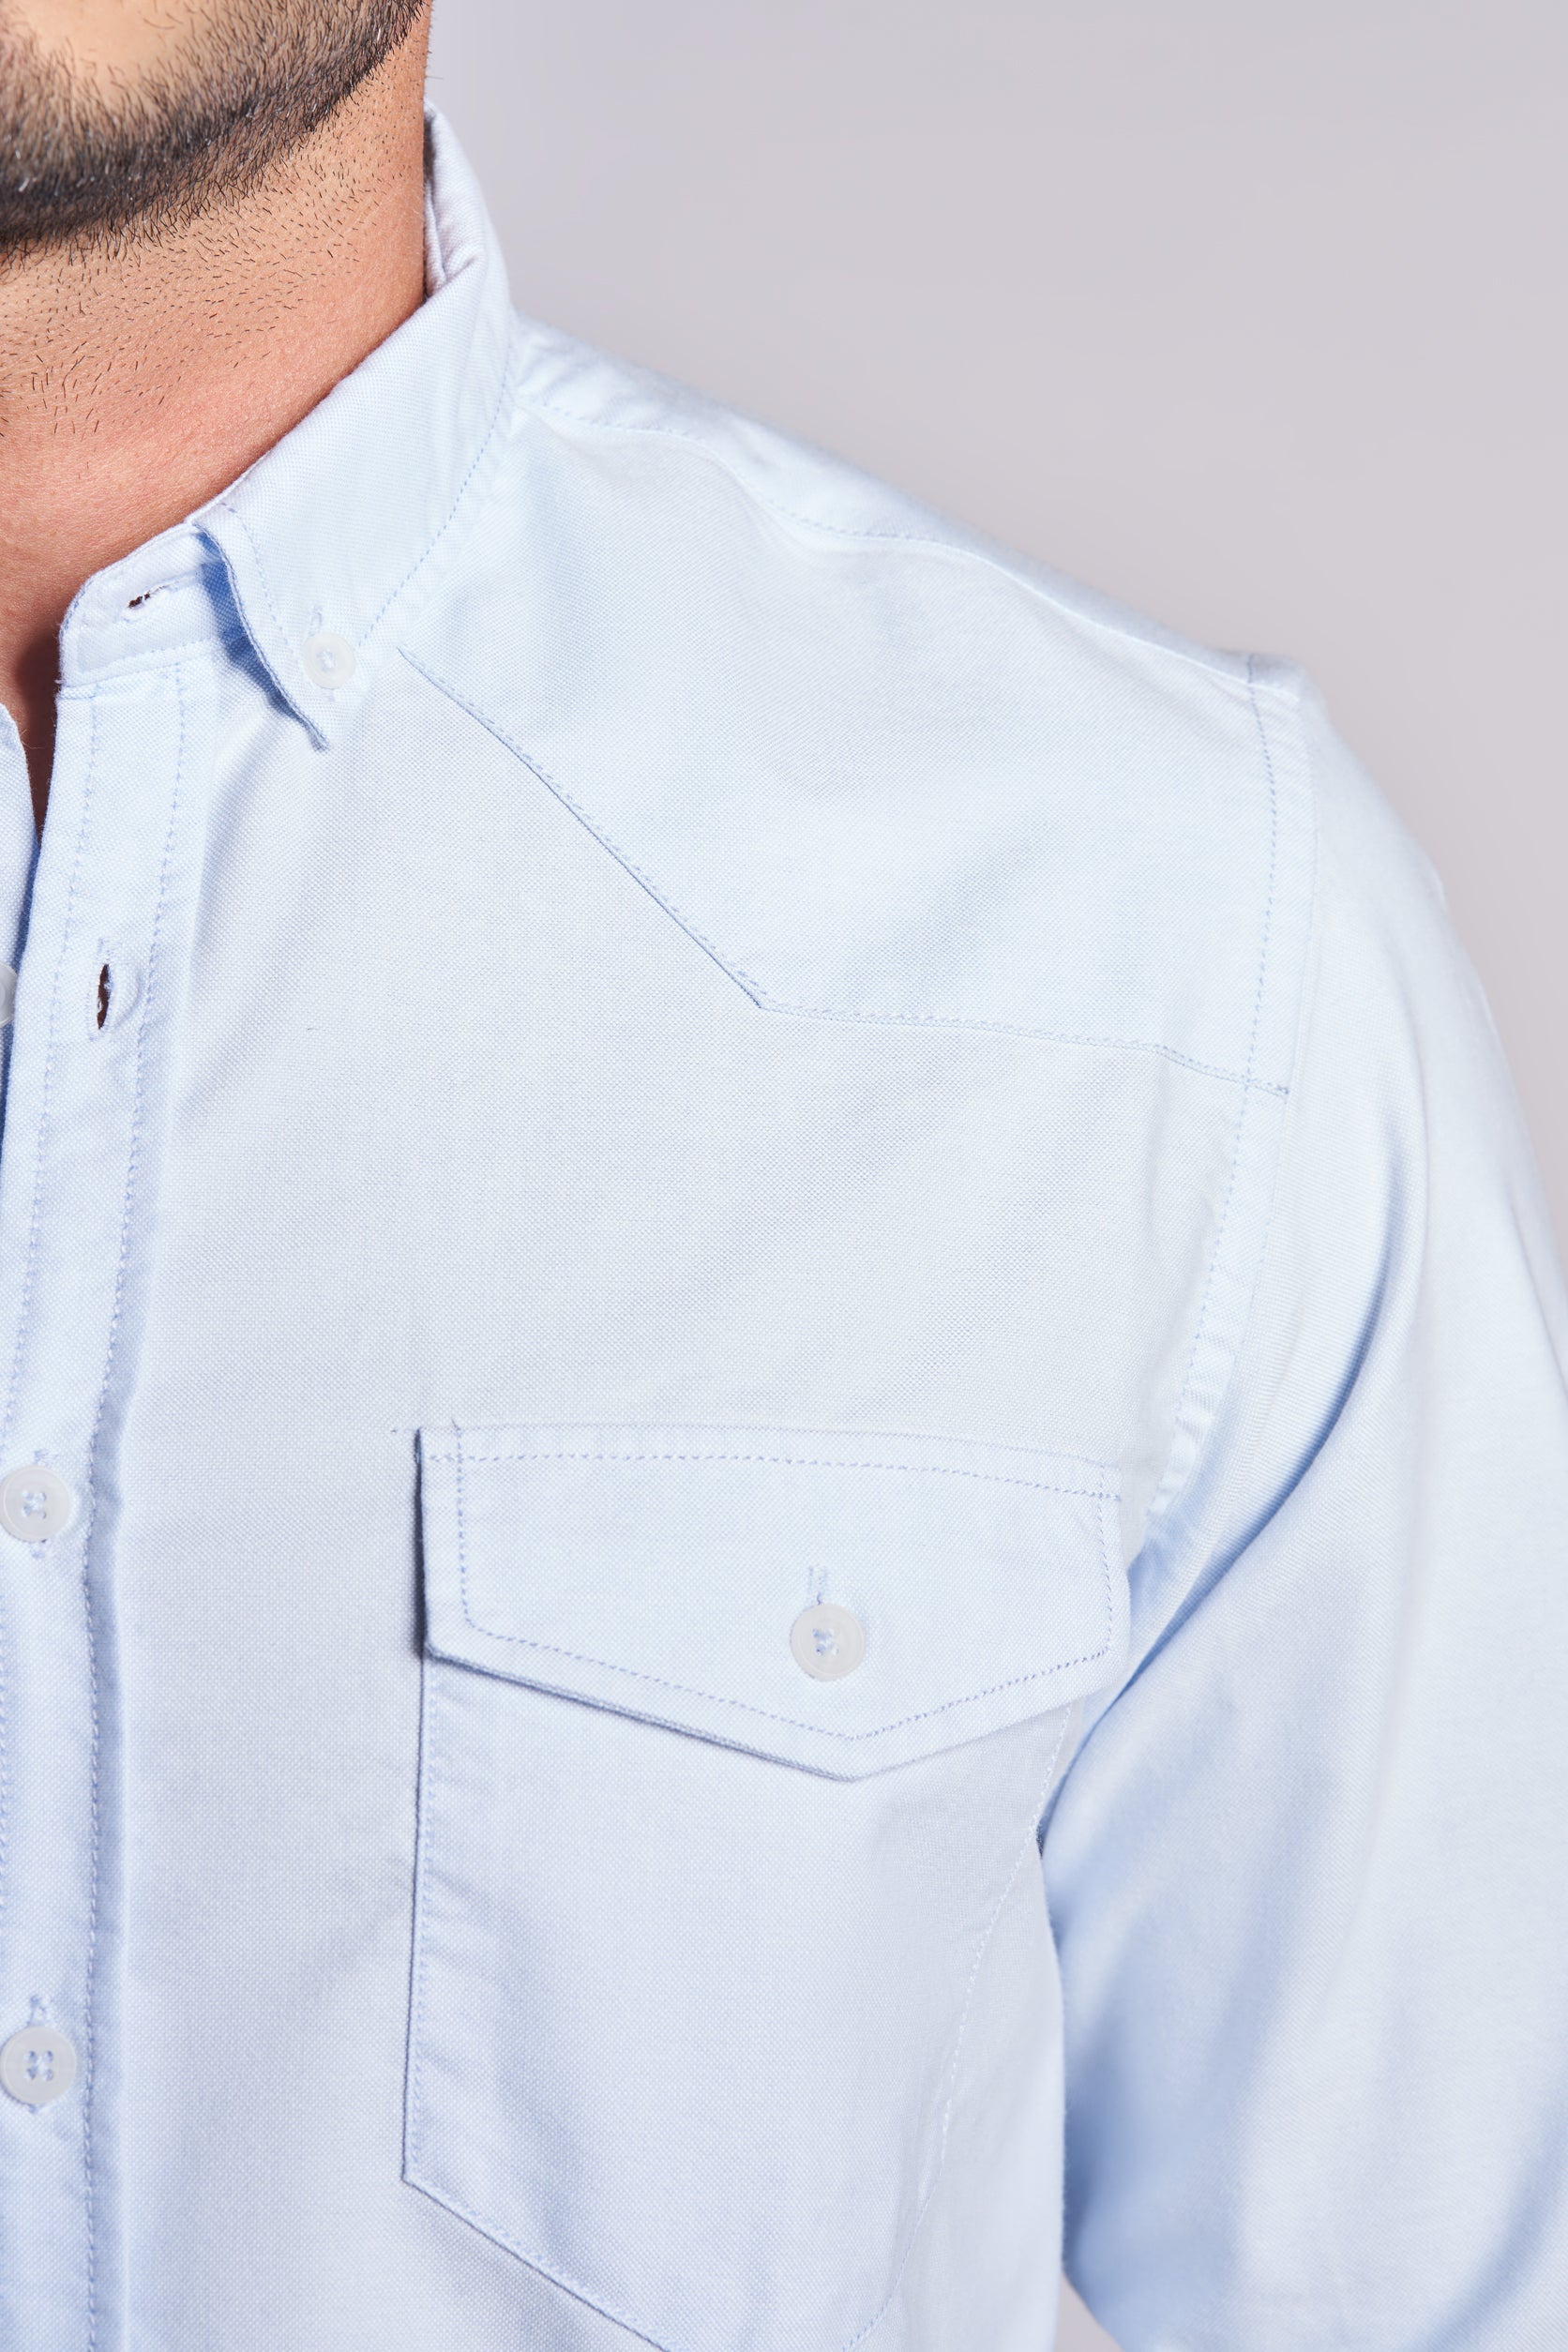 Light blue sleeved men's shirt(693)